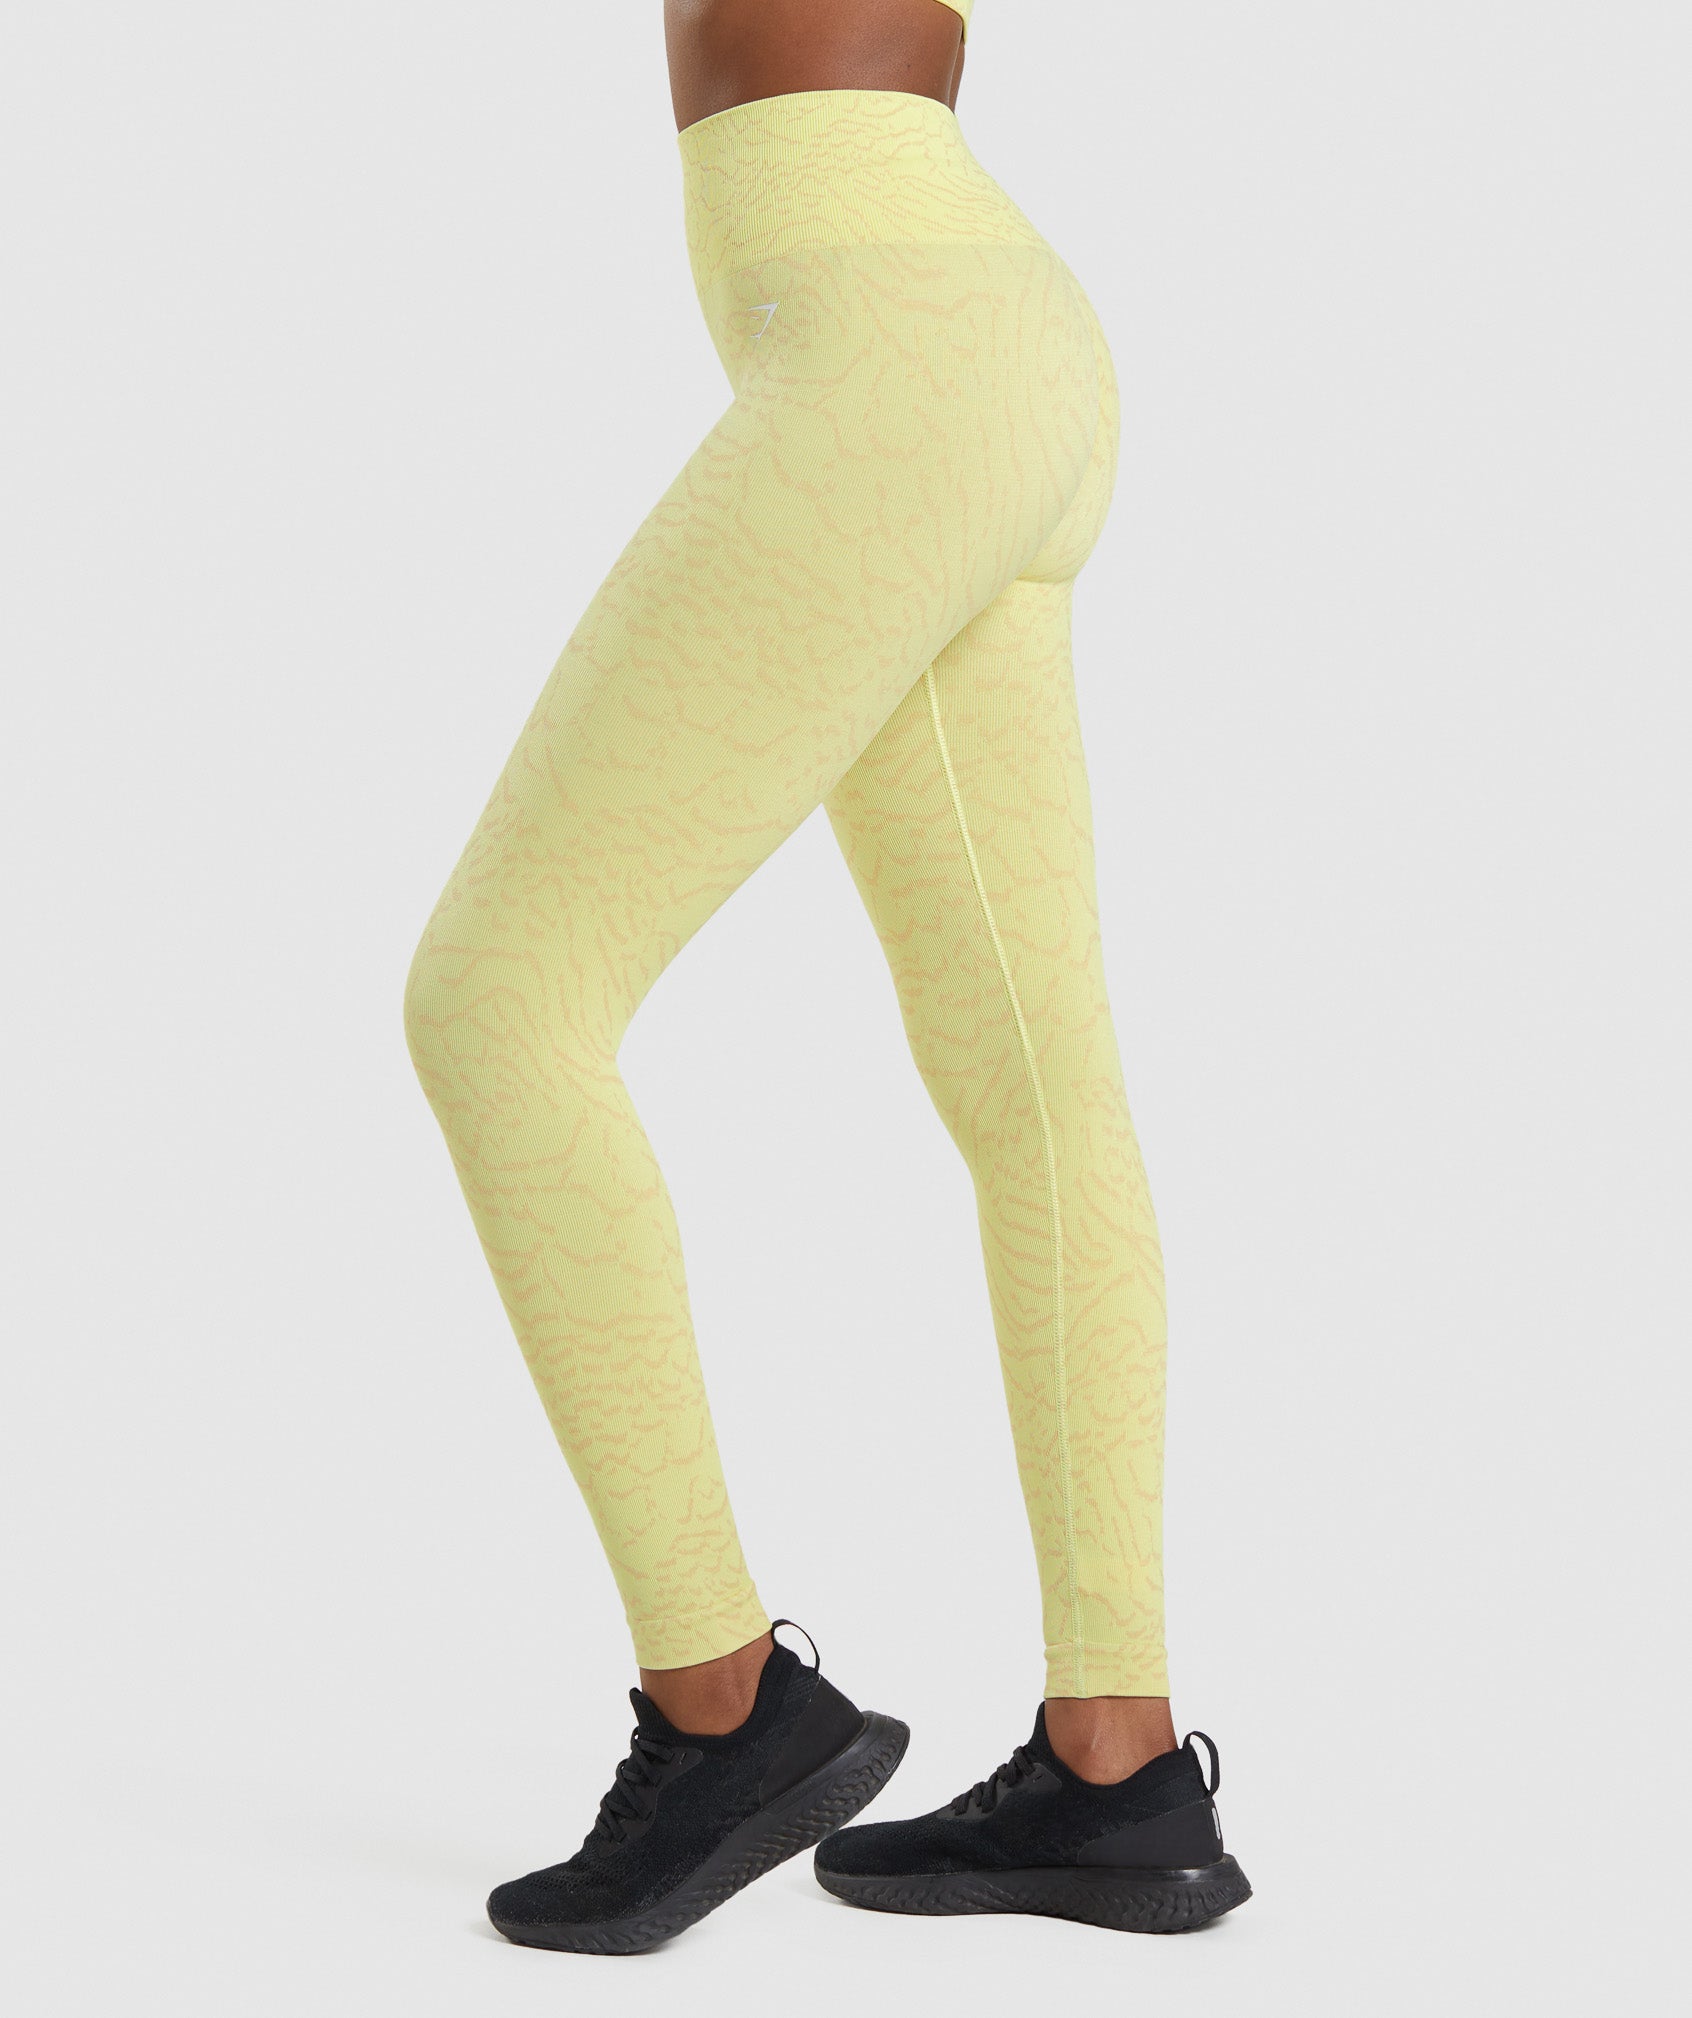 Women's training leggings Gymshark Adapt Camo Savanna Seamless yellow/white  